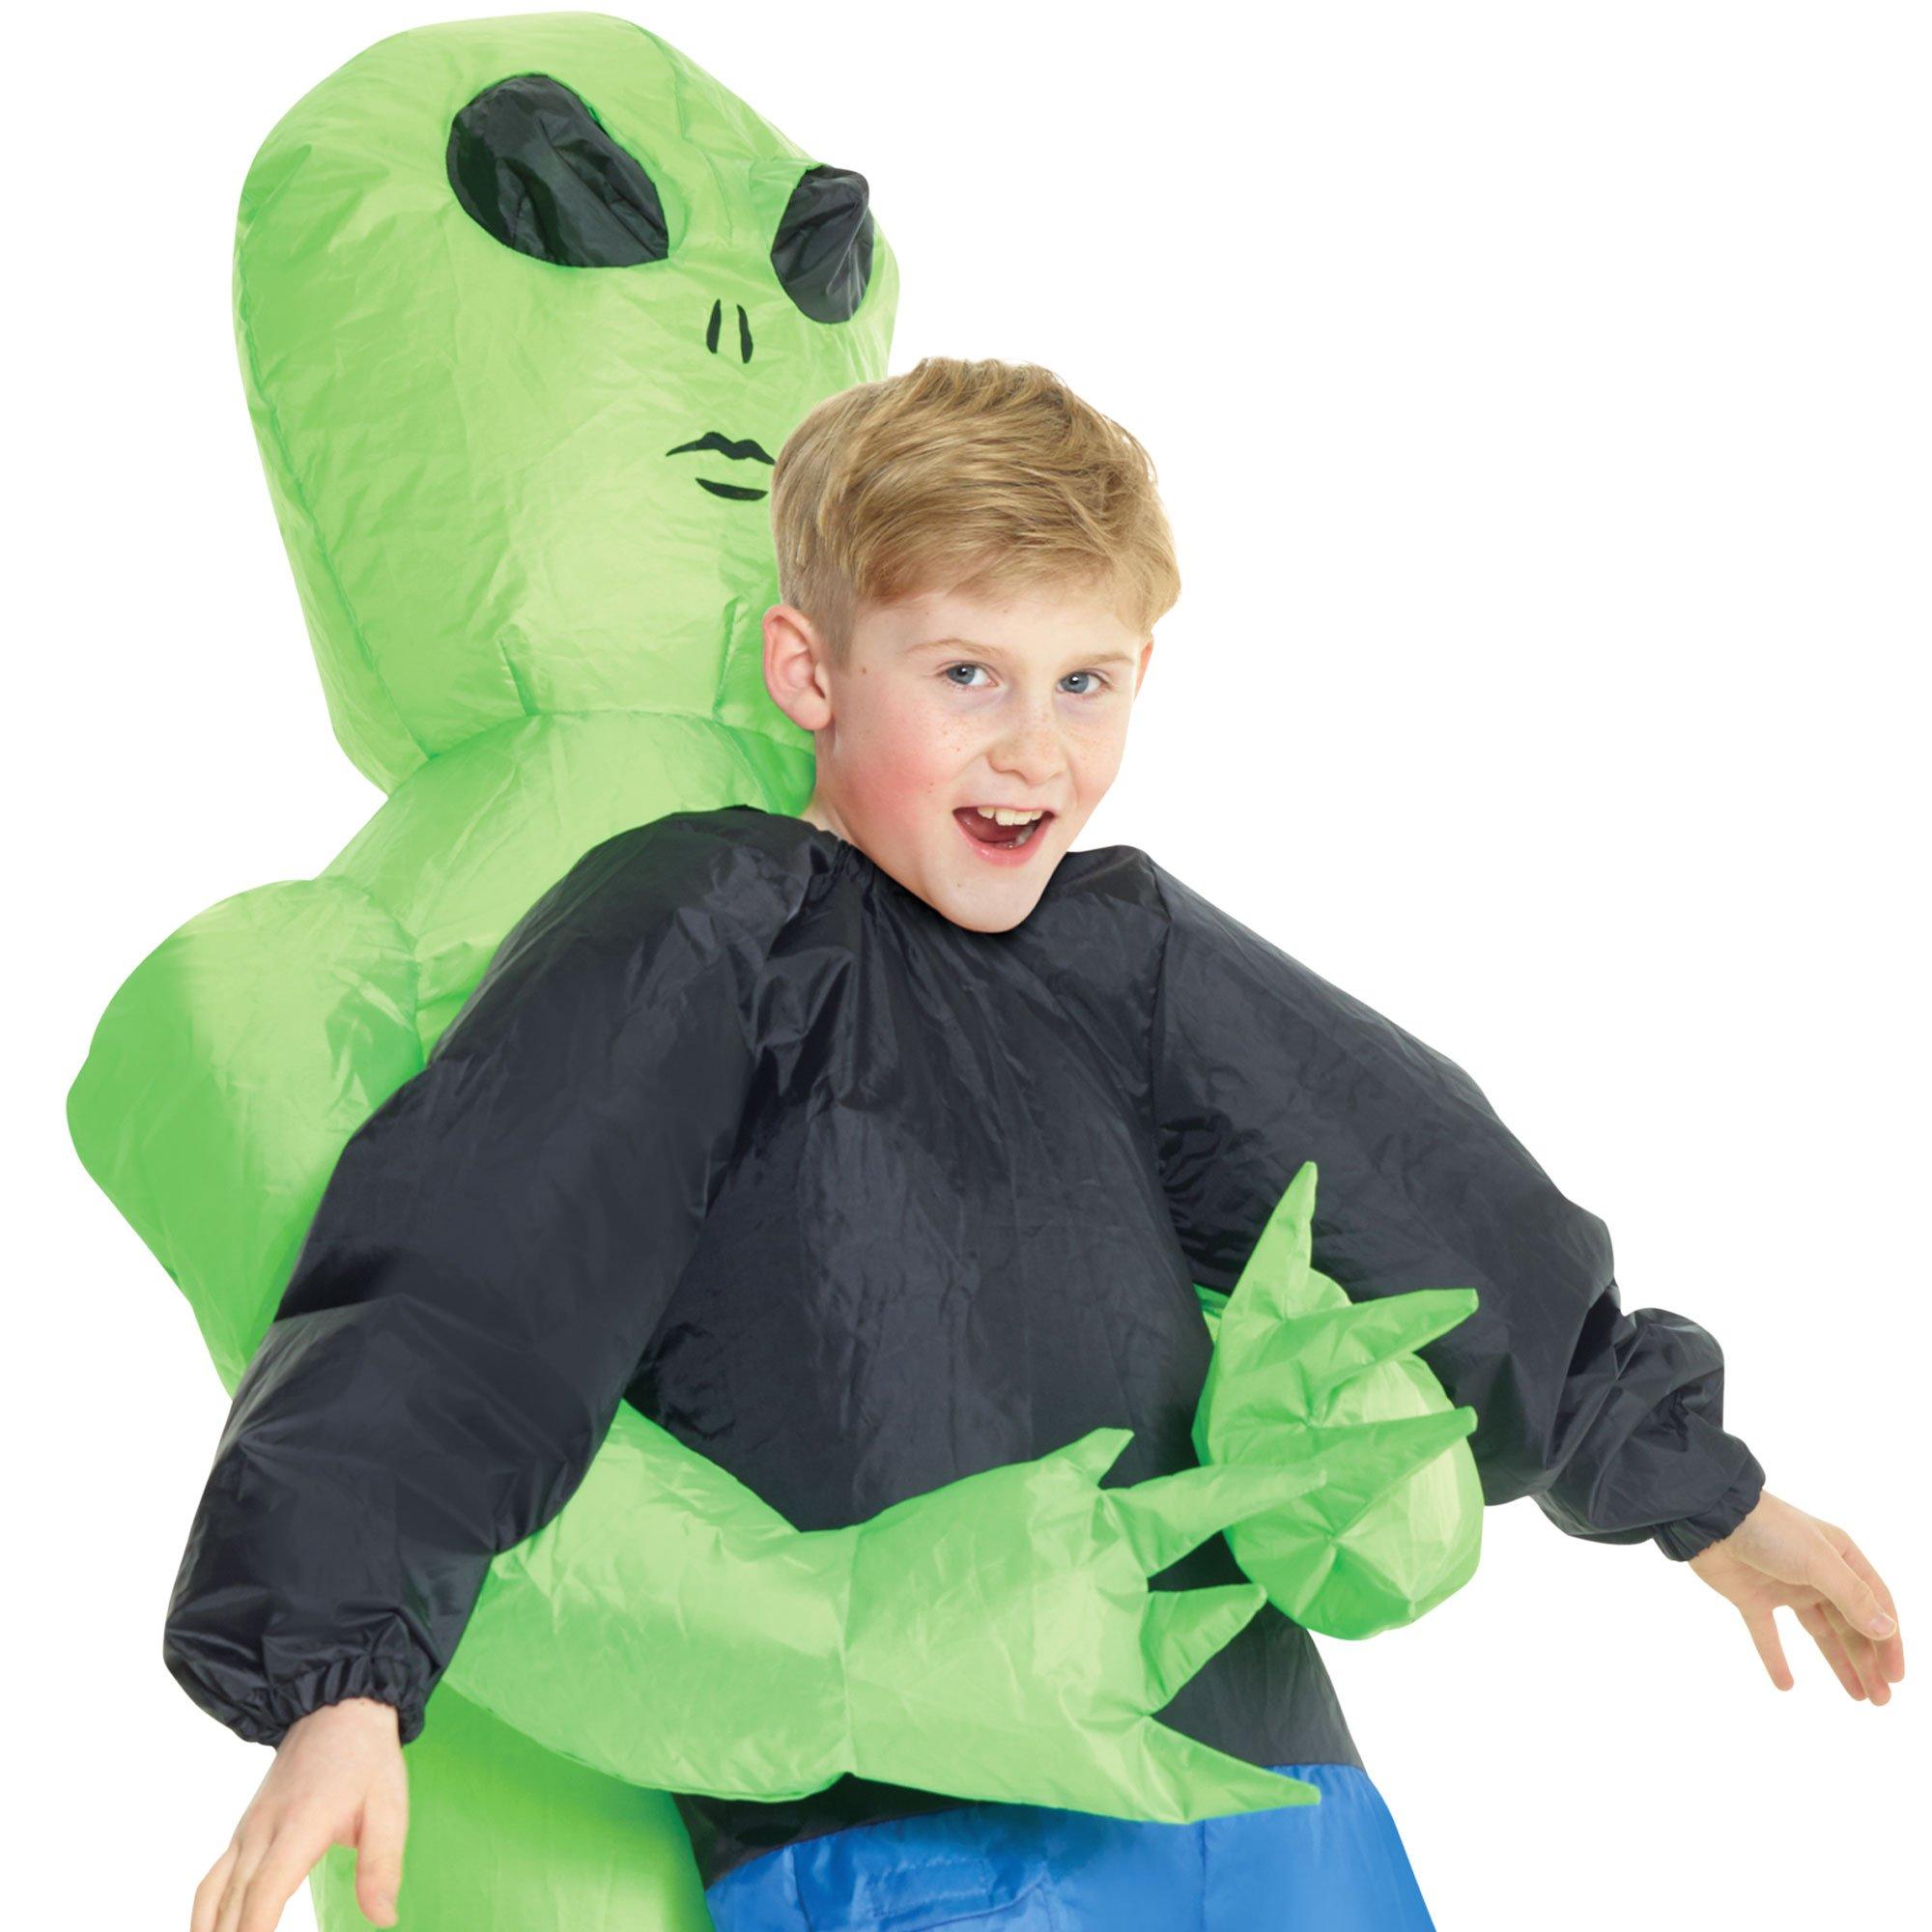 Kids Alien Costume for AVP  RPF Costume and Prop Maker Community